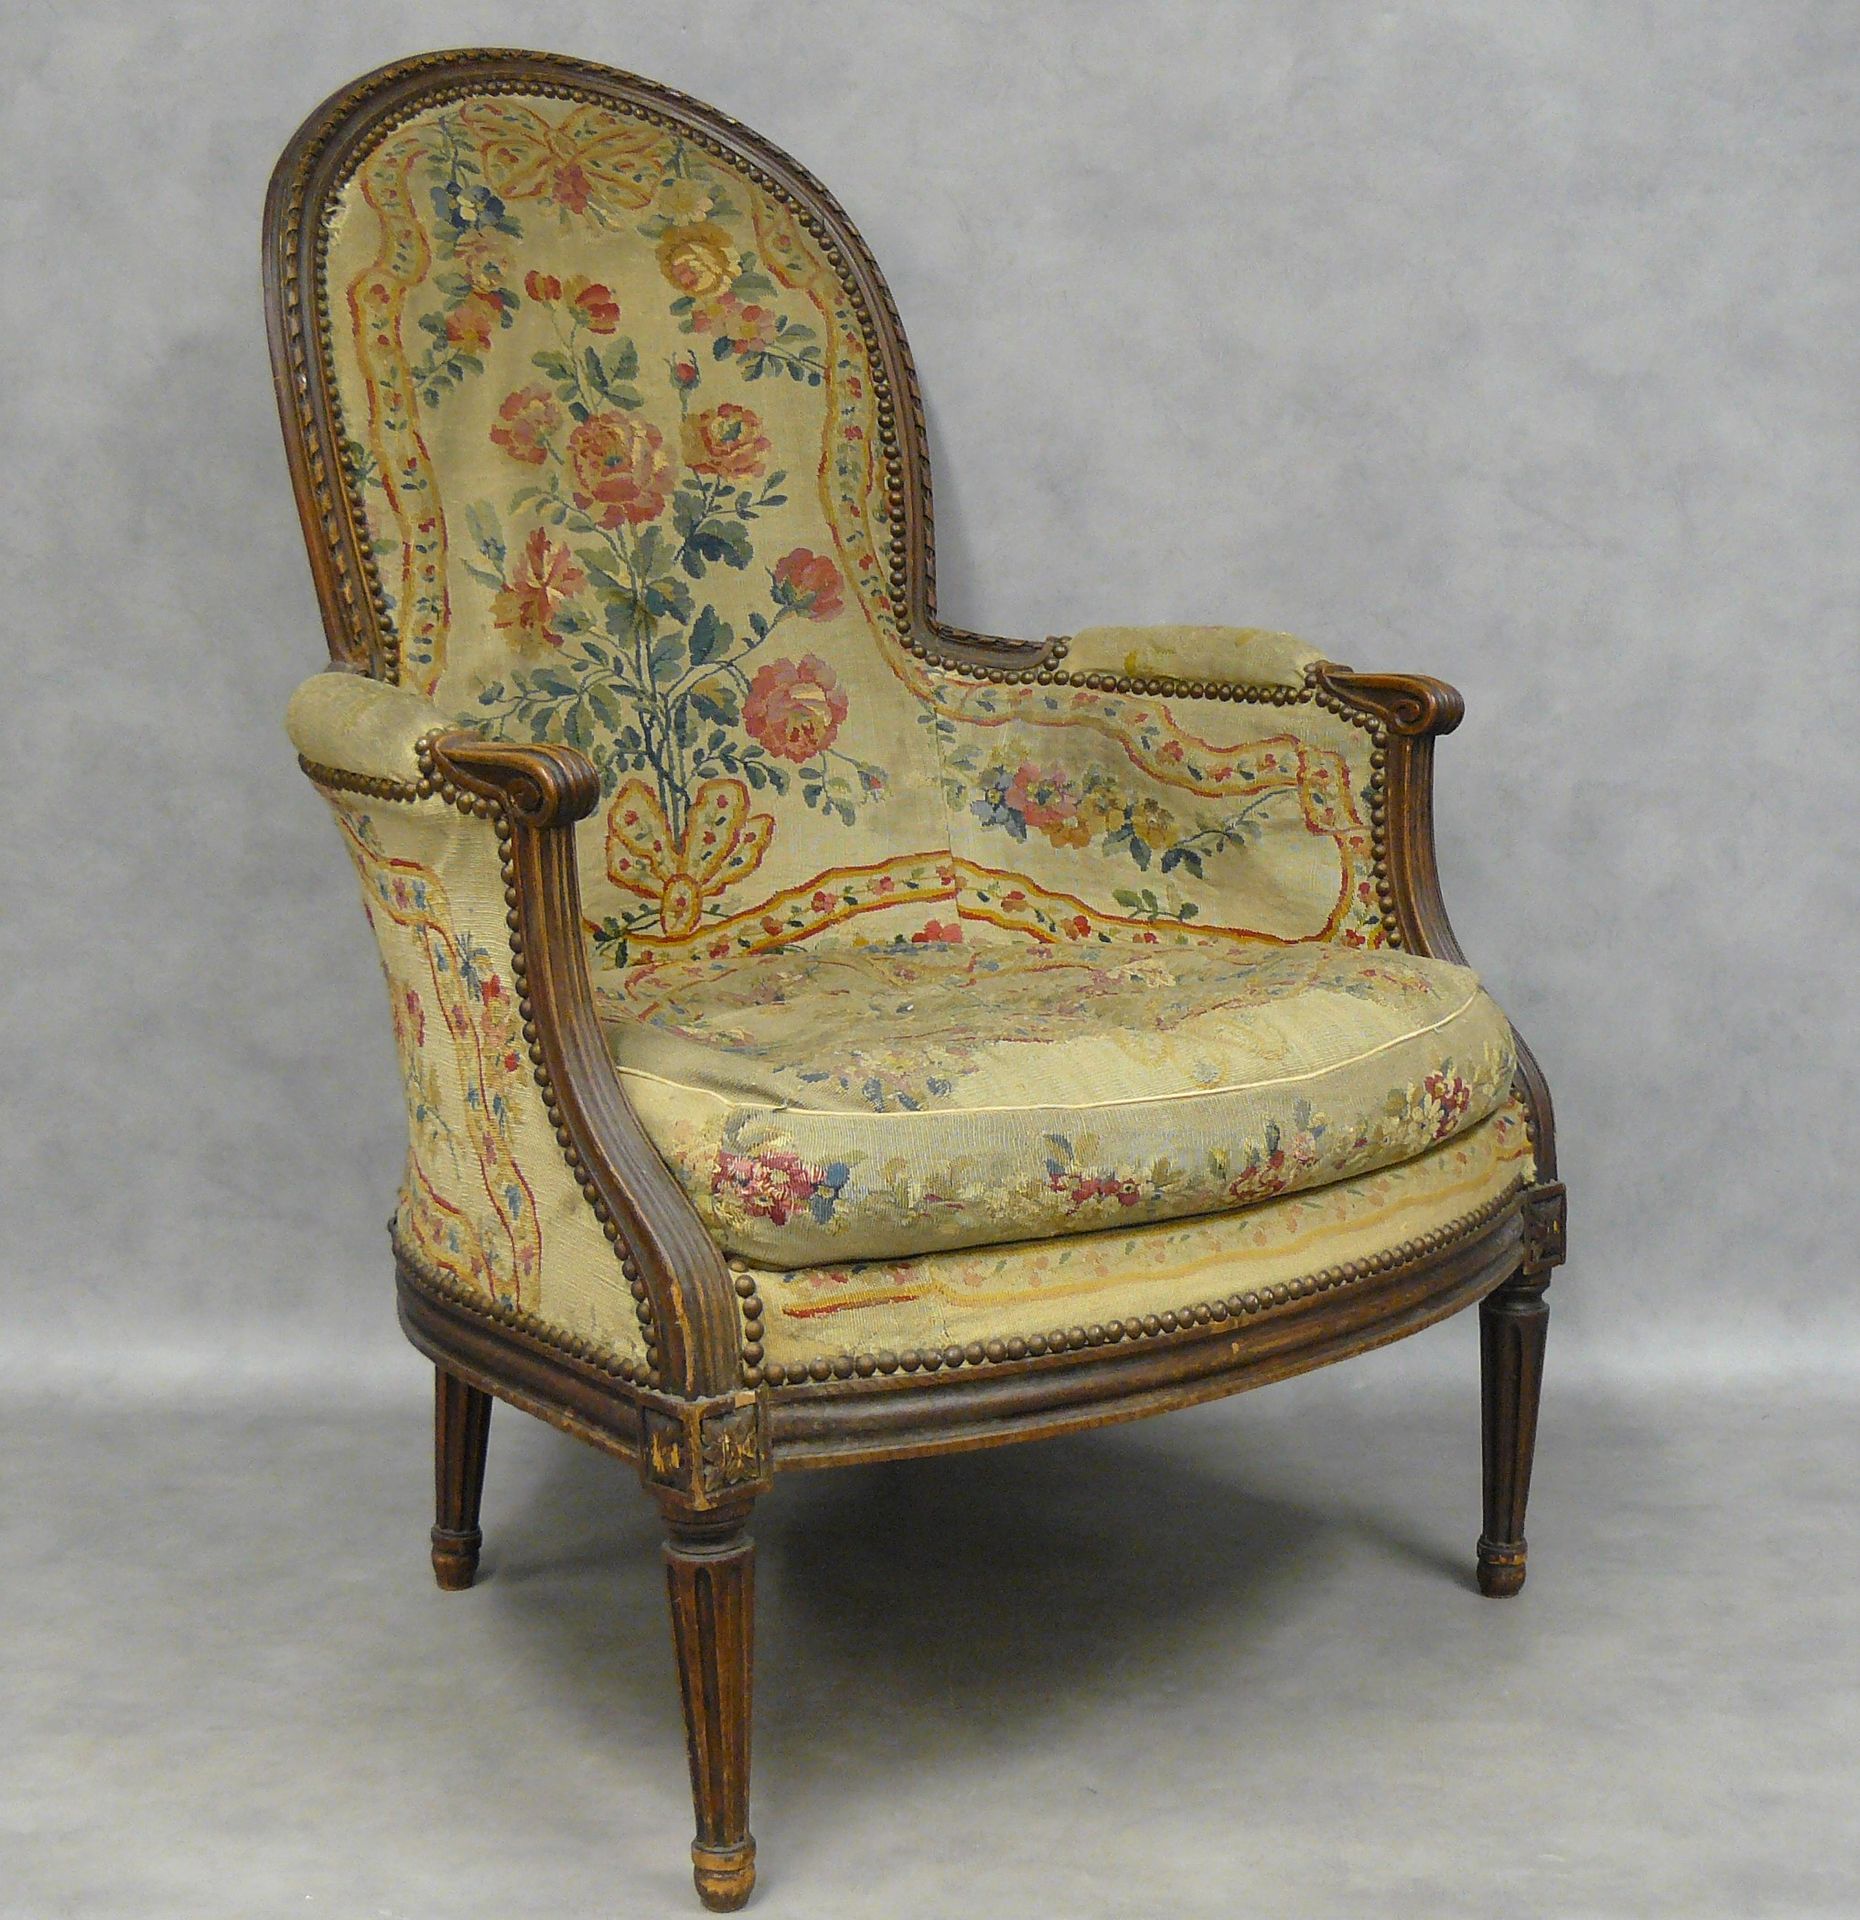 Null 一把路易十六风格的扶手椅，天然木材，锥形凹槽腿，花卉挂毯装饰（磨损）